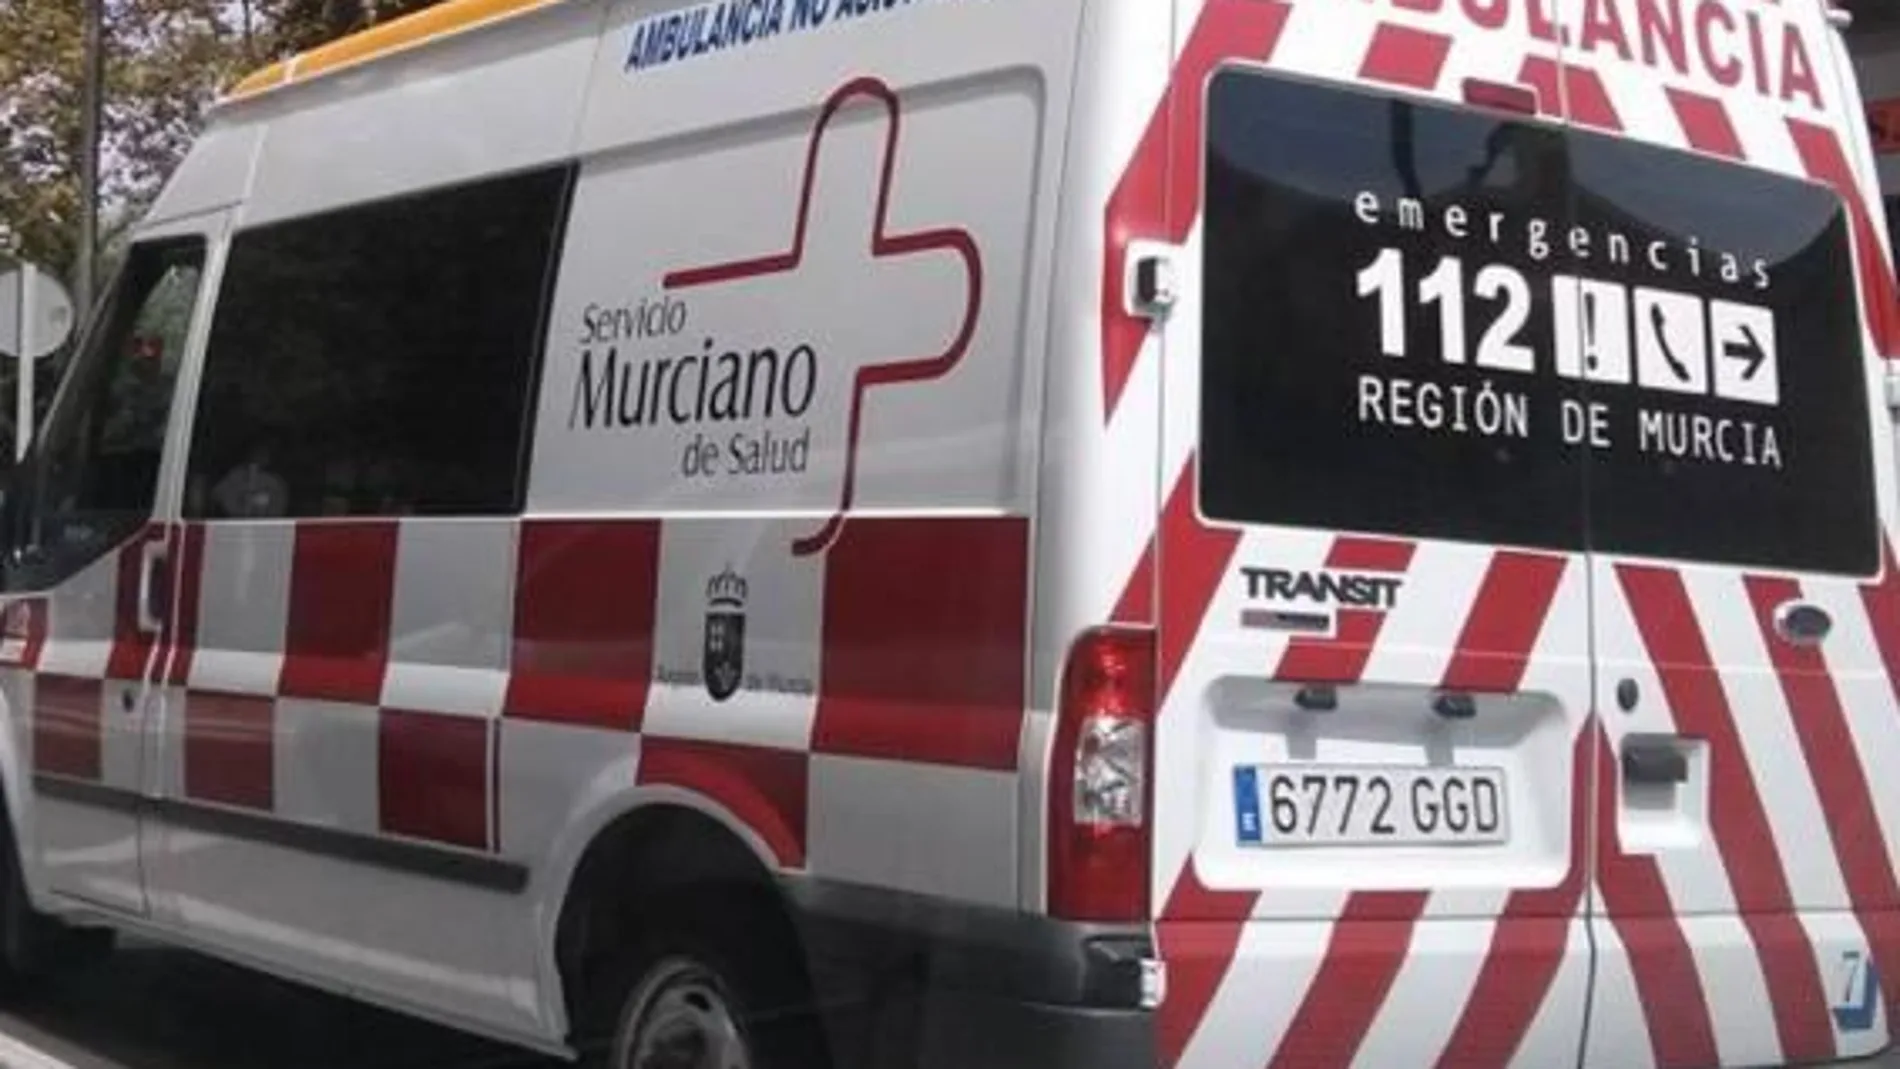 Servicios de emergencia atienden y trasladan a un niño herido al ser atropellado en Altorreal